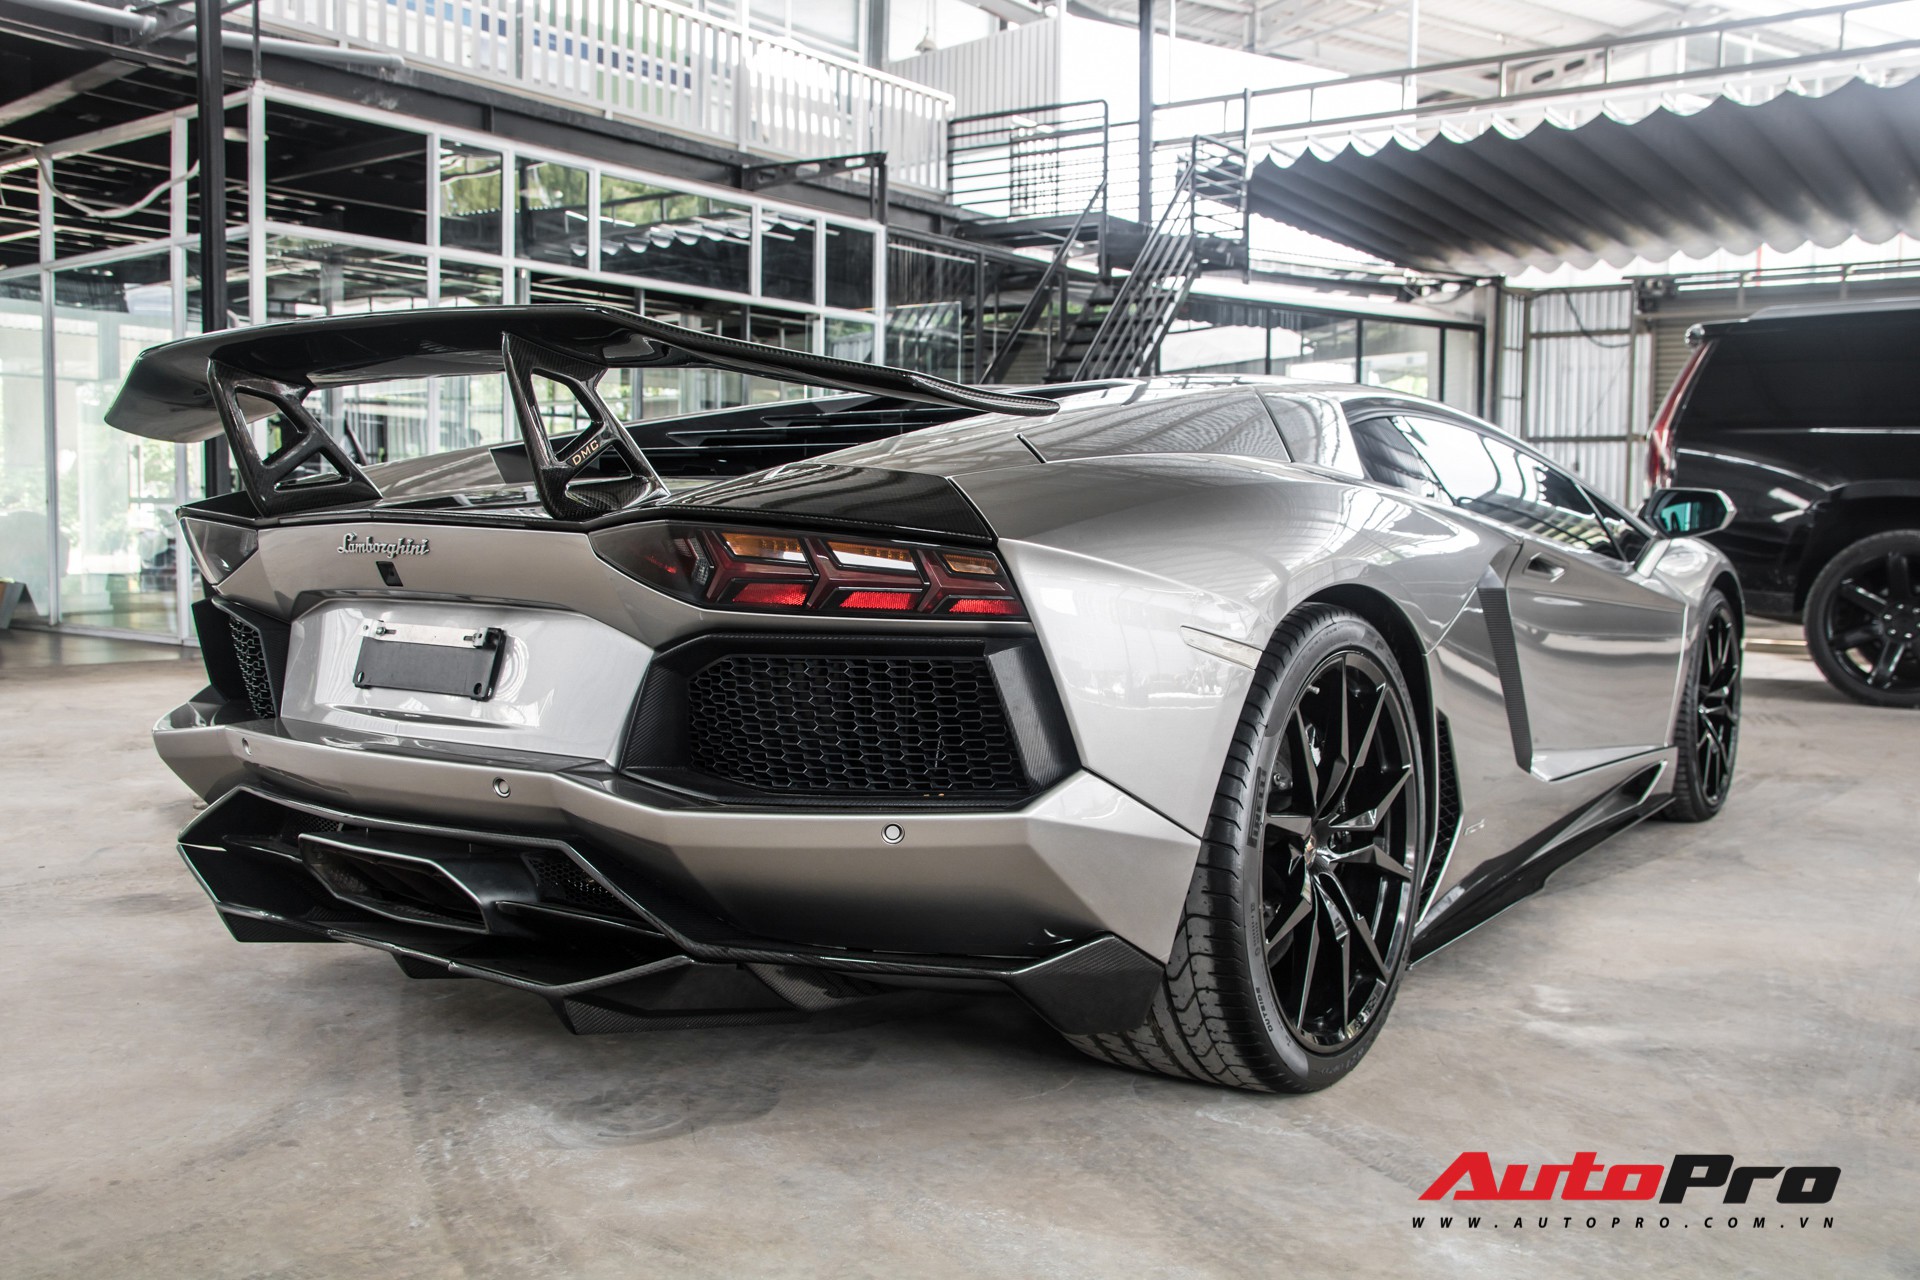 Đánh giá nhanh Lamborghini Aventador độ DMC - 'xế cưng' một thời của doanh  nhân Đặng Lê Nguyên Vũ